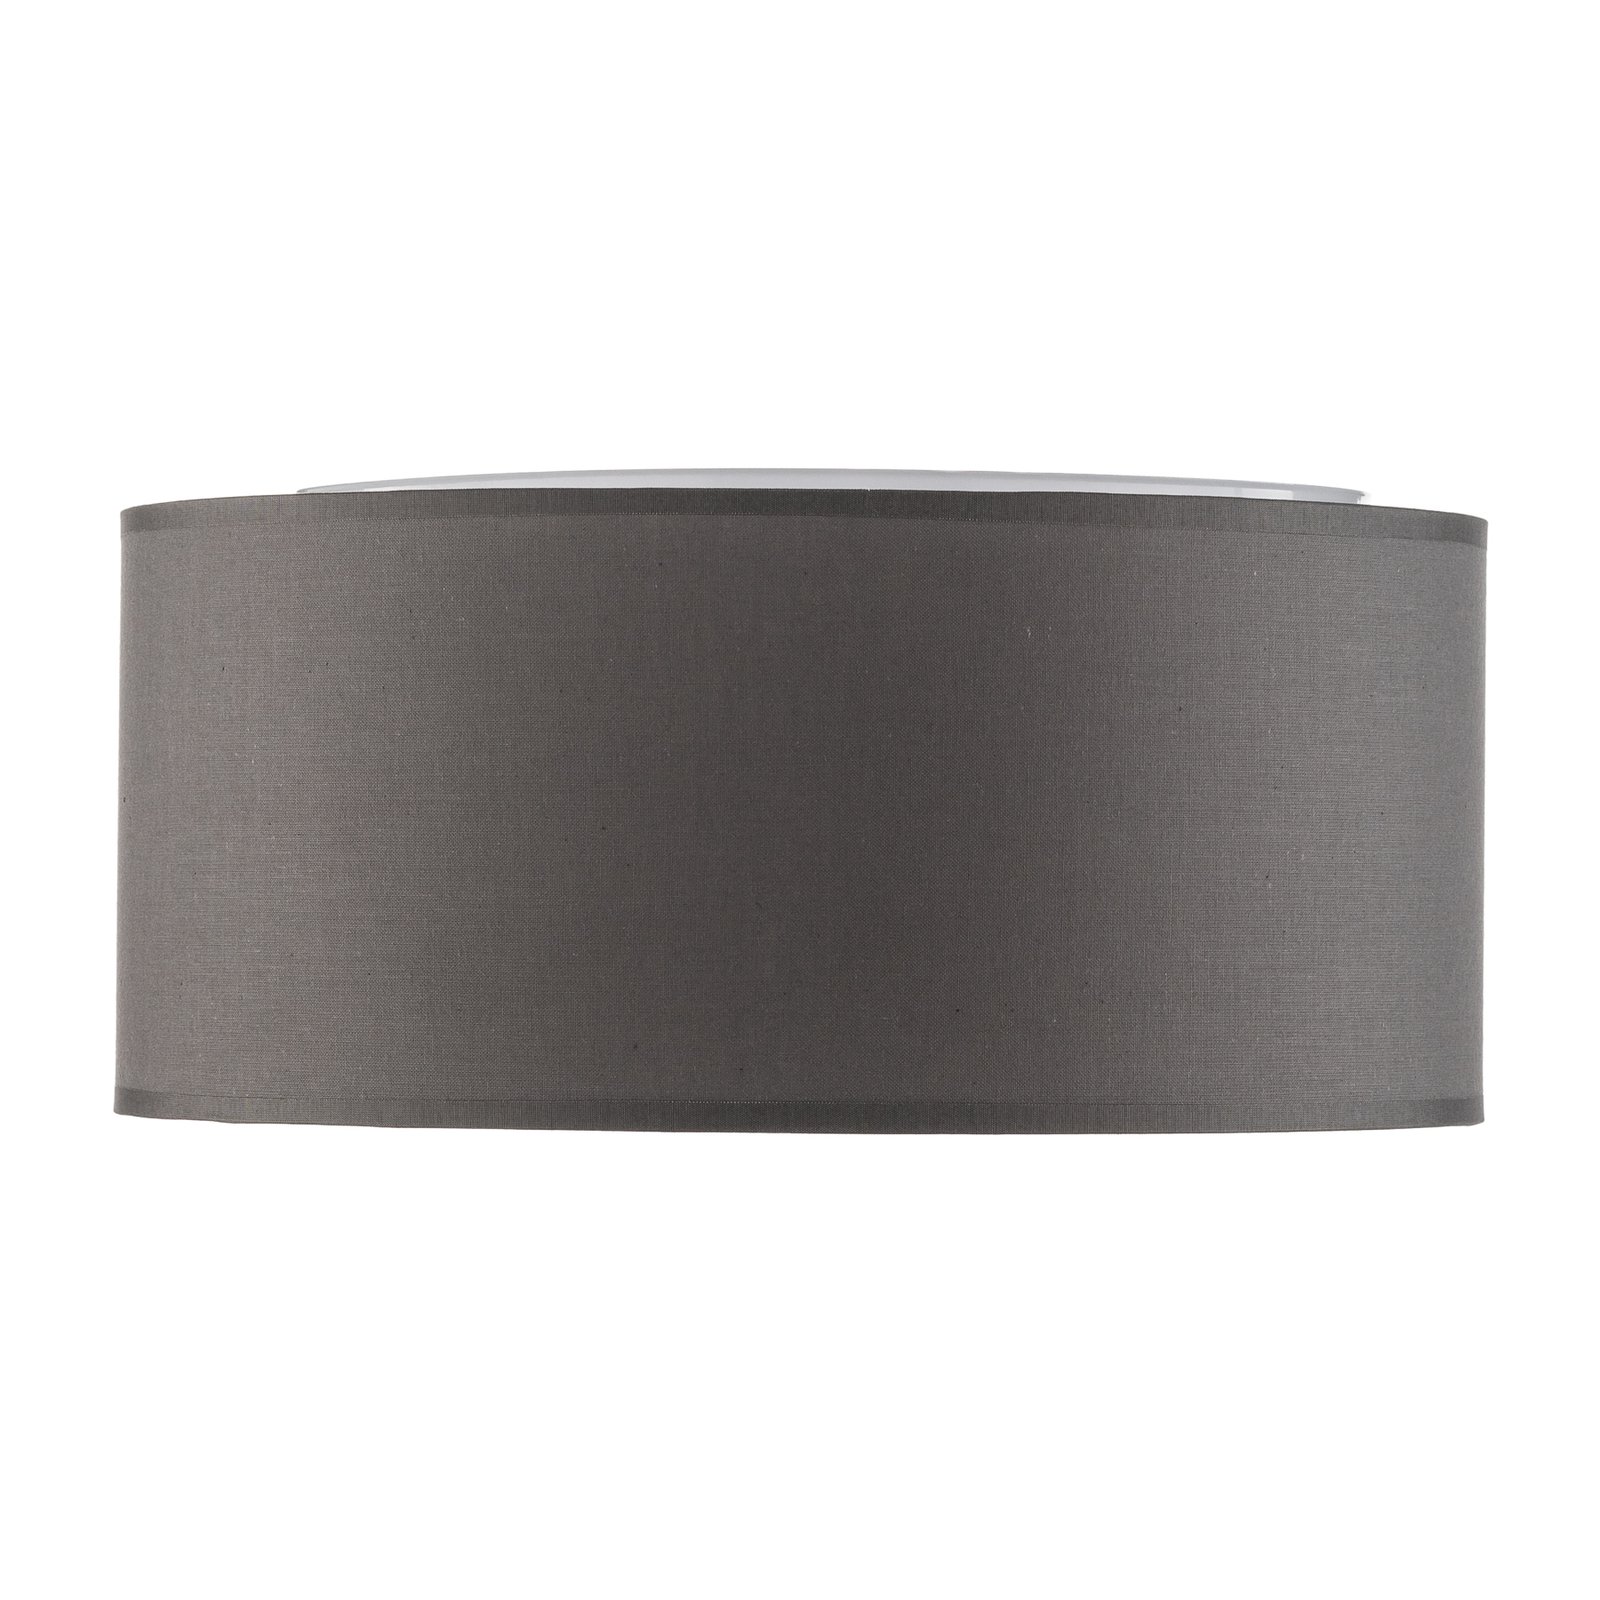 Stropní svítidlo Rondo, šedé, Ø 30 cm